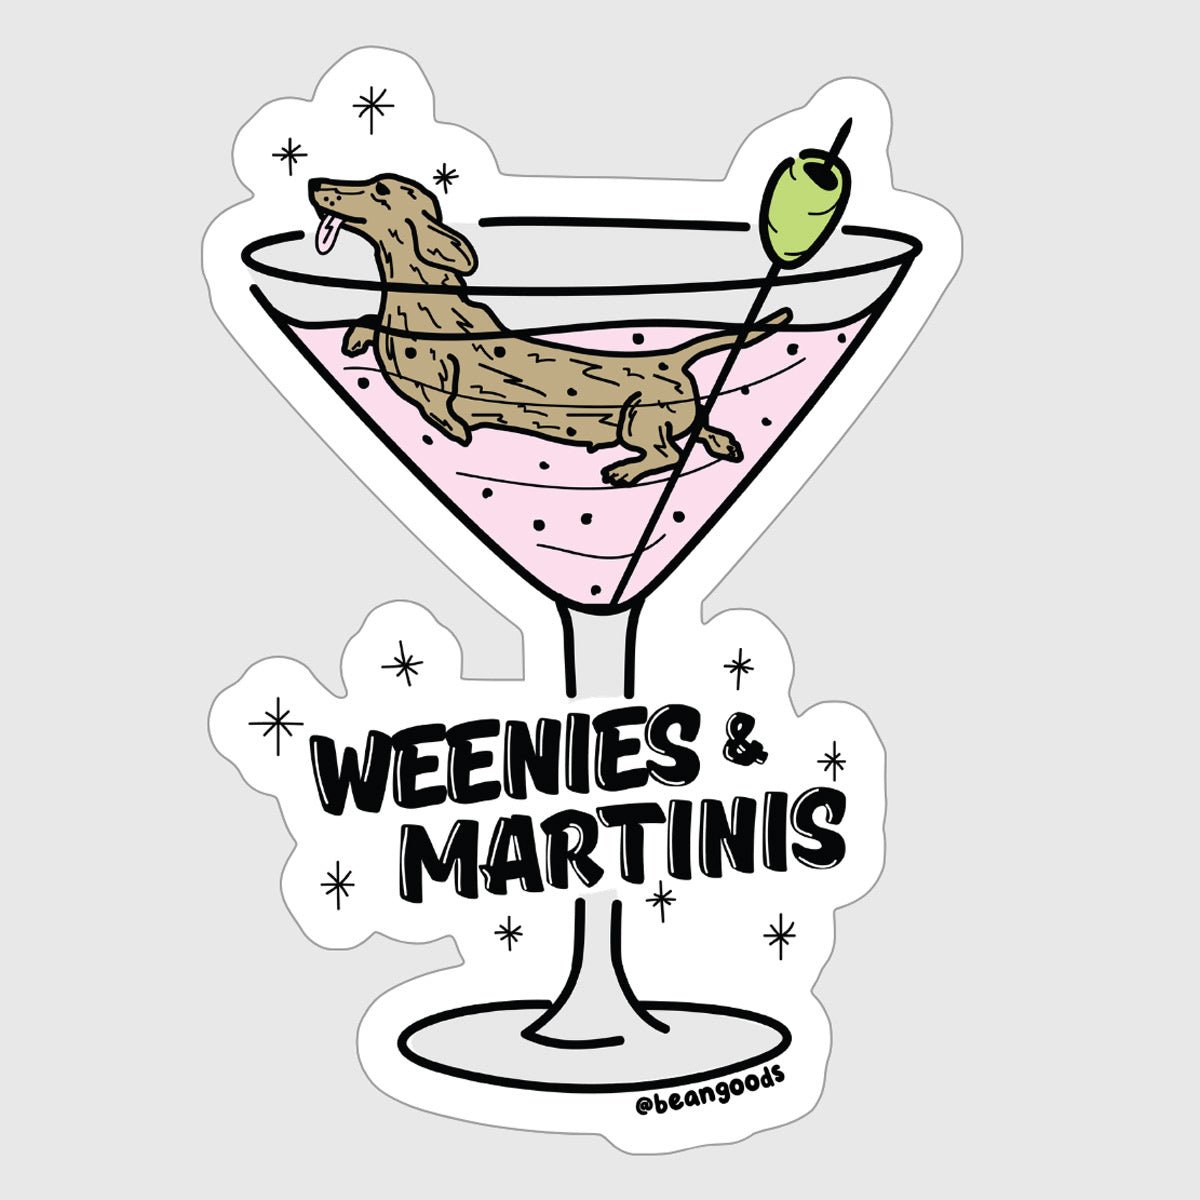 weenies & martinis sticker - bean goods